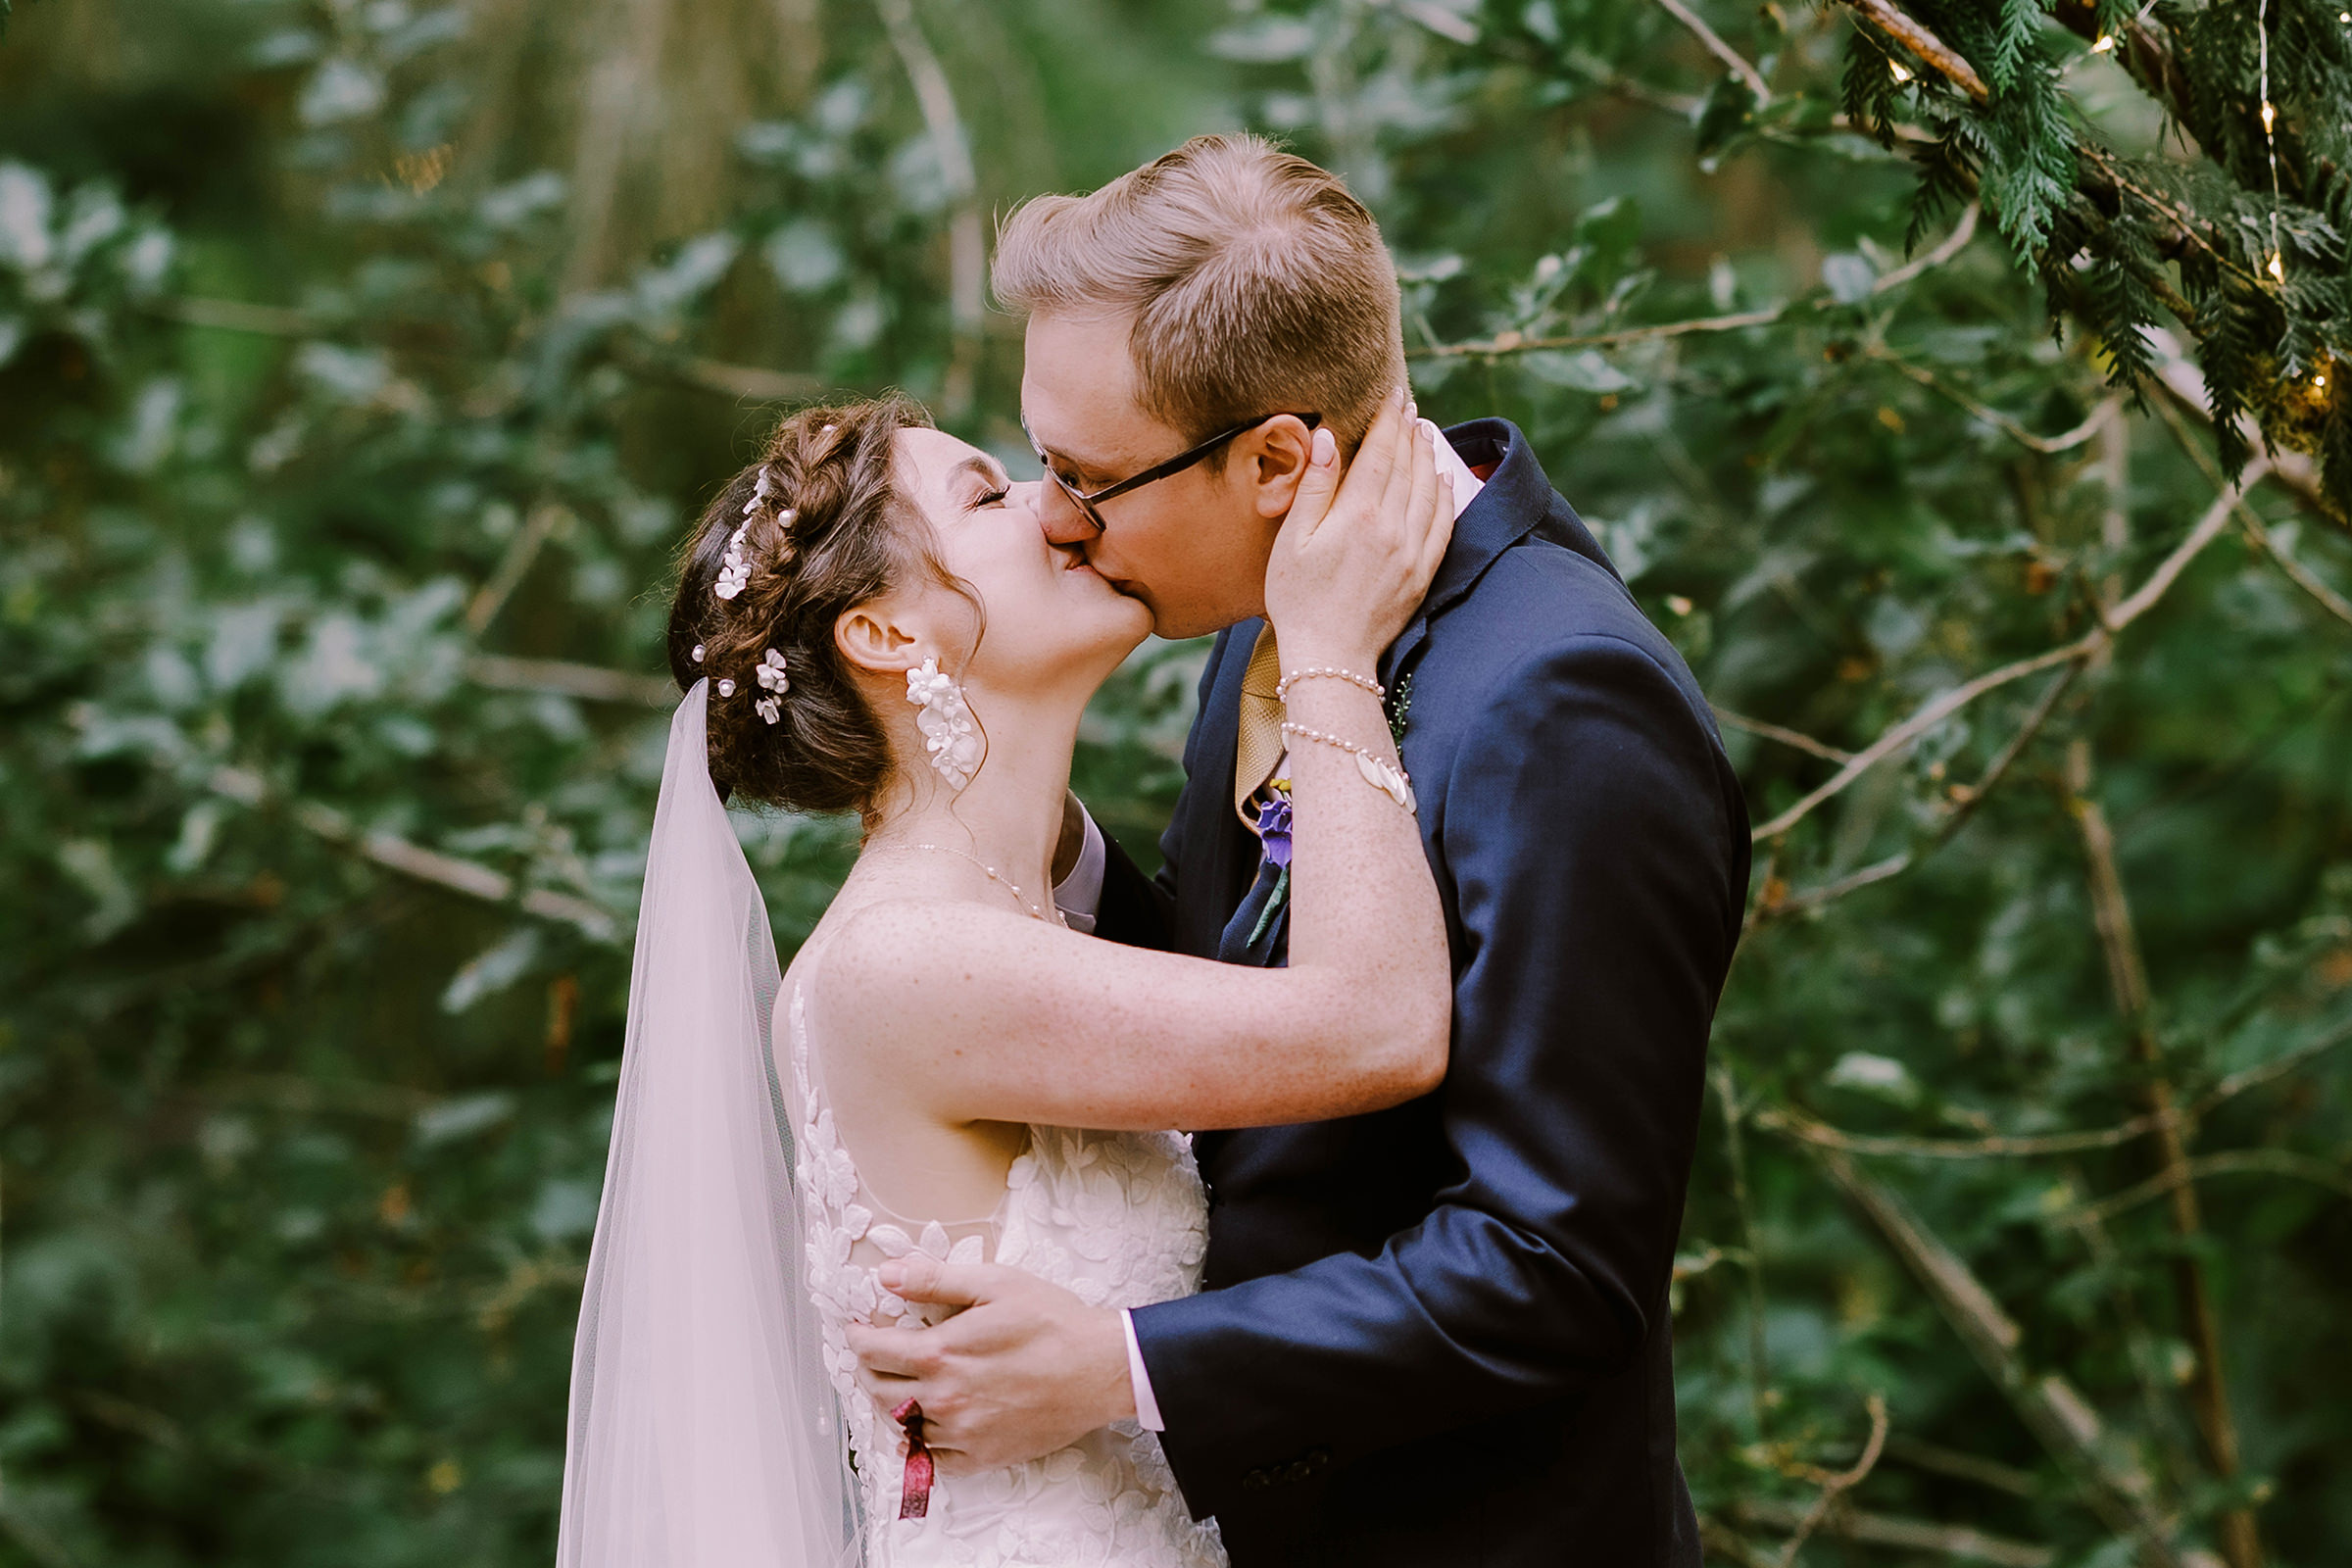 Annika and Sean seal their wedding with a kiss.